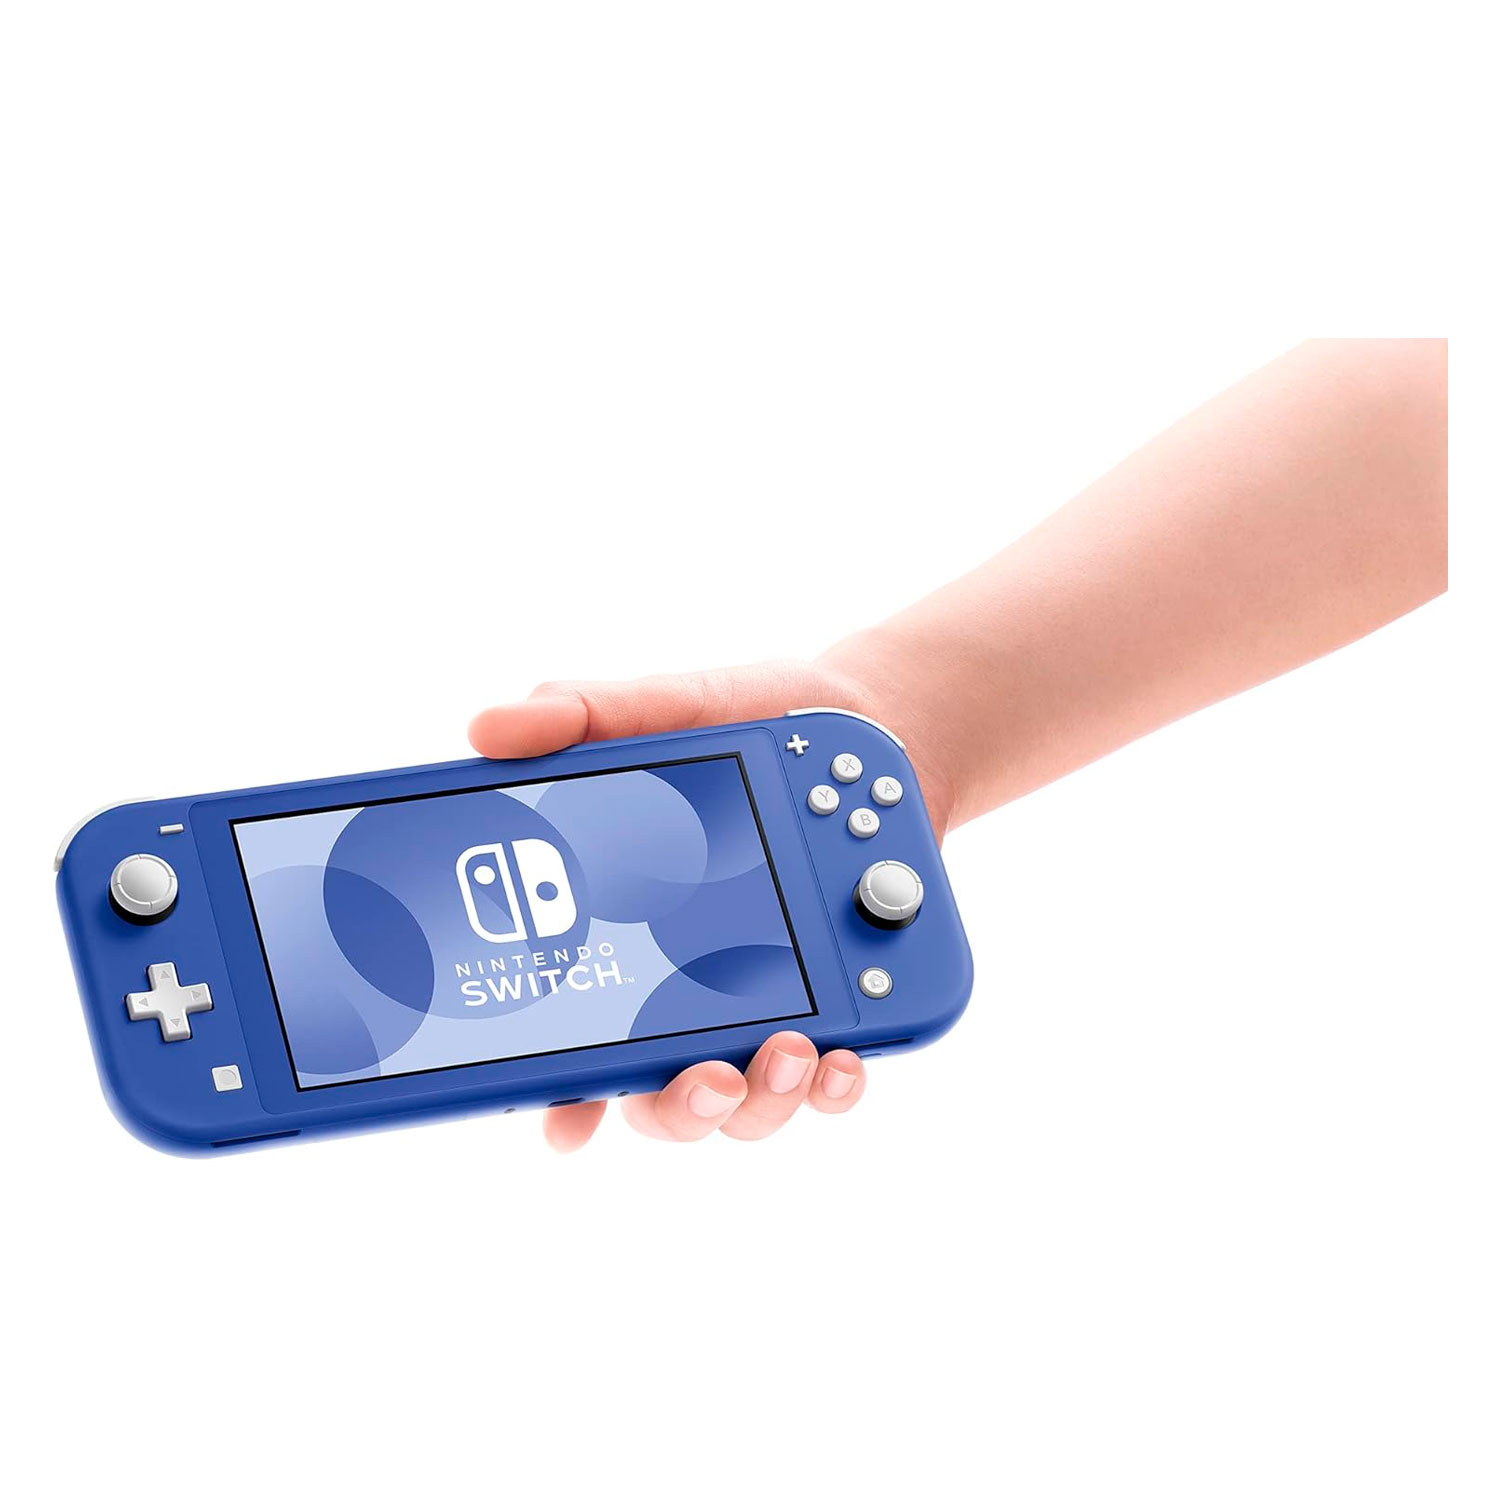 Console Nintendo Switch Lite 32GB Japão - Azul (HDH-S-BBZAA) (Caixa Danificada) (Carregador Original)